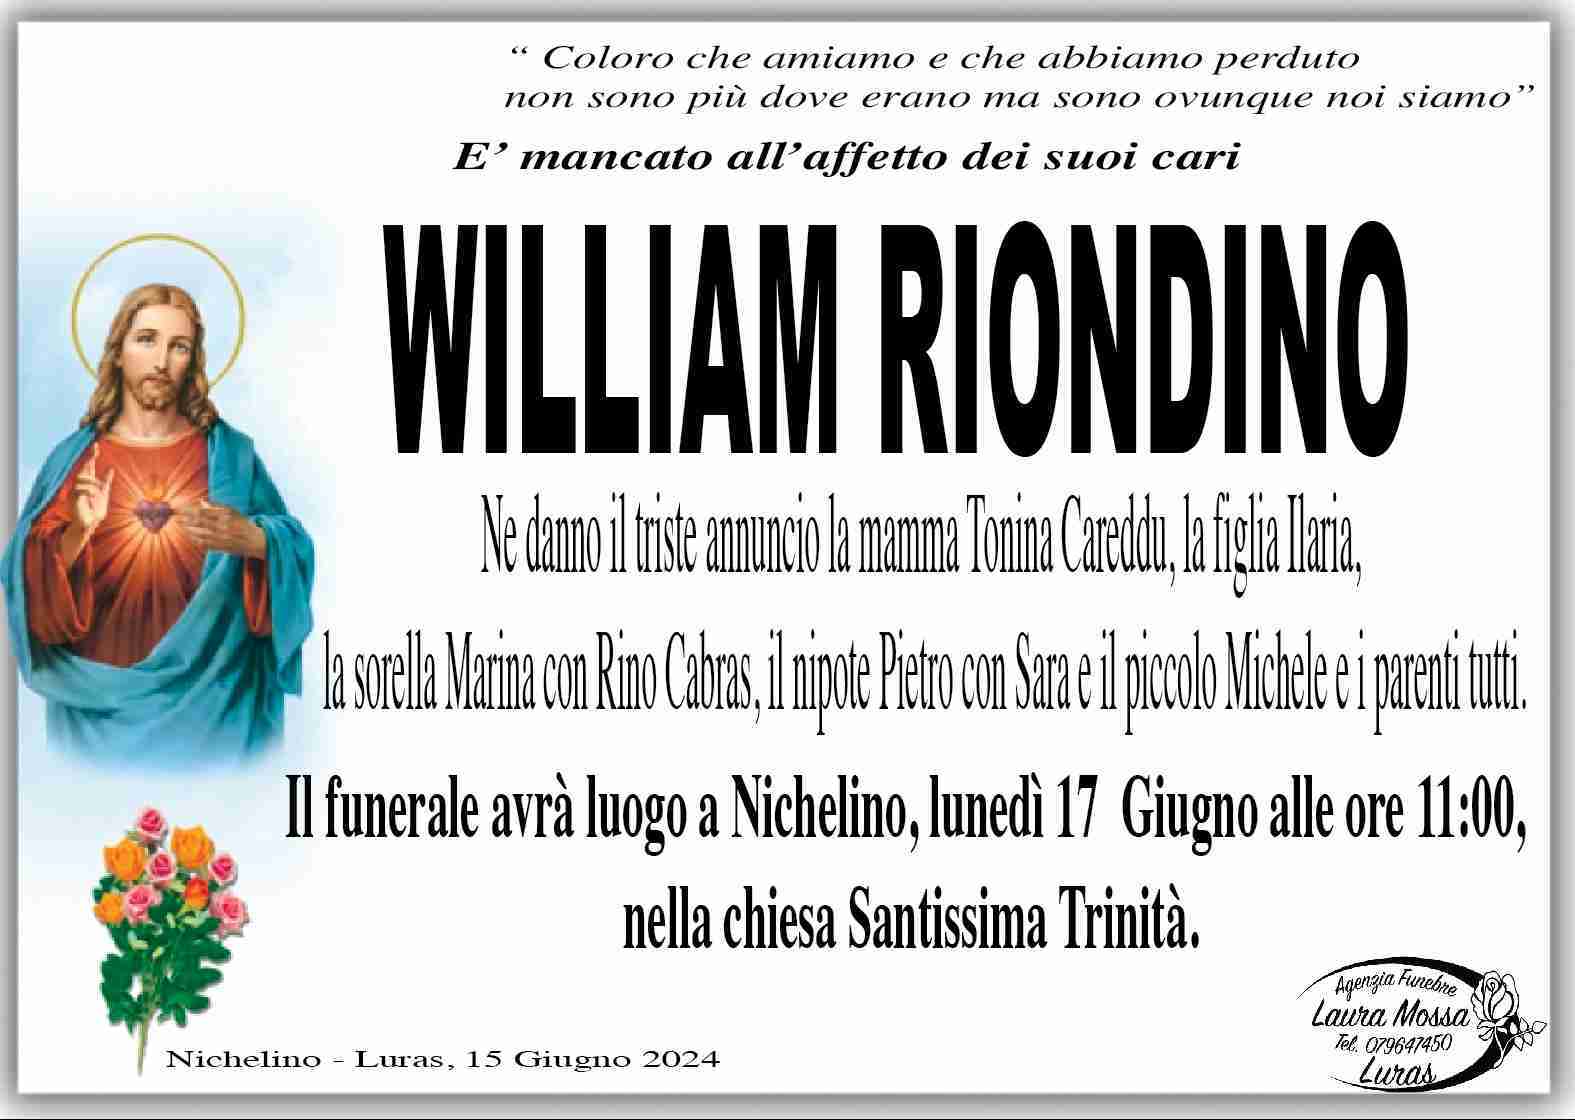 William Riondino